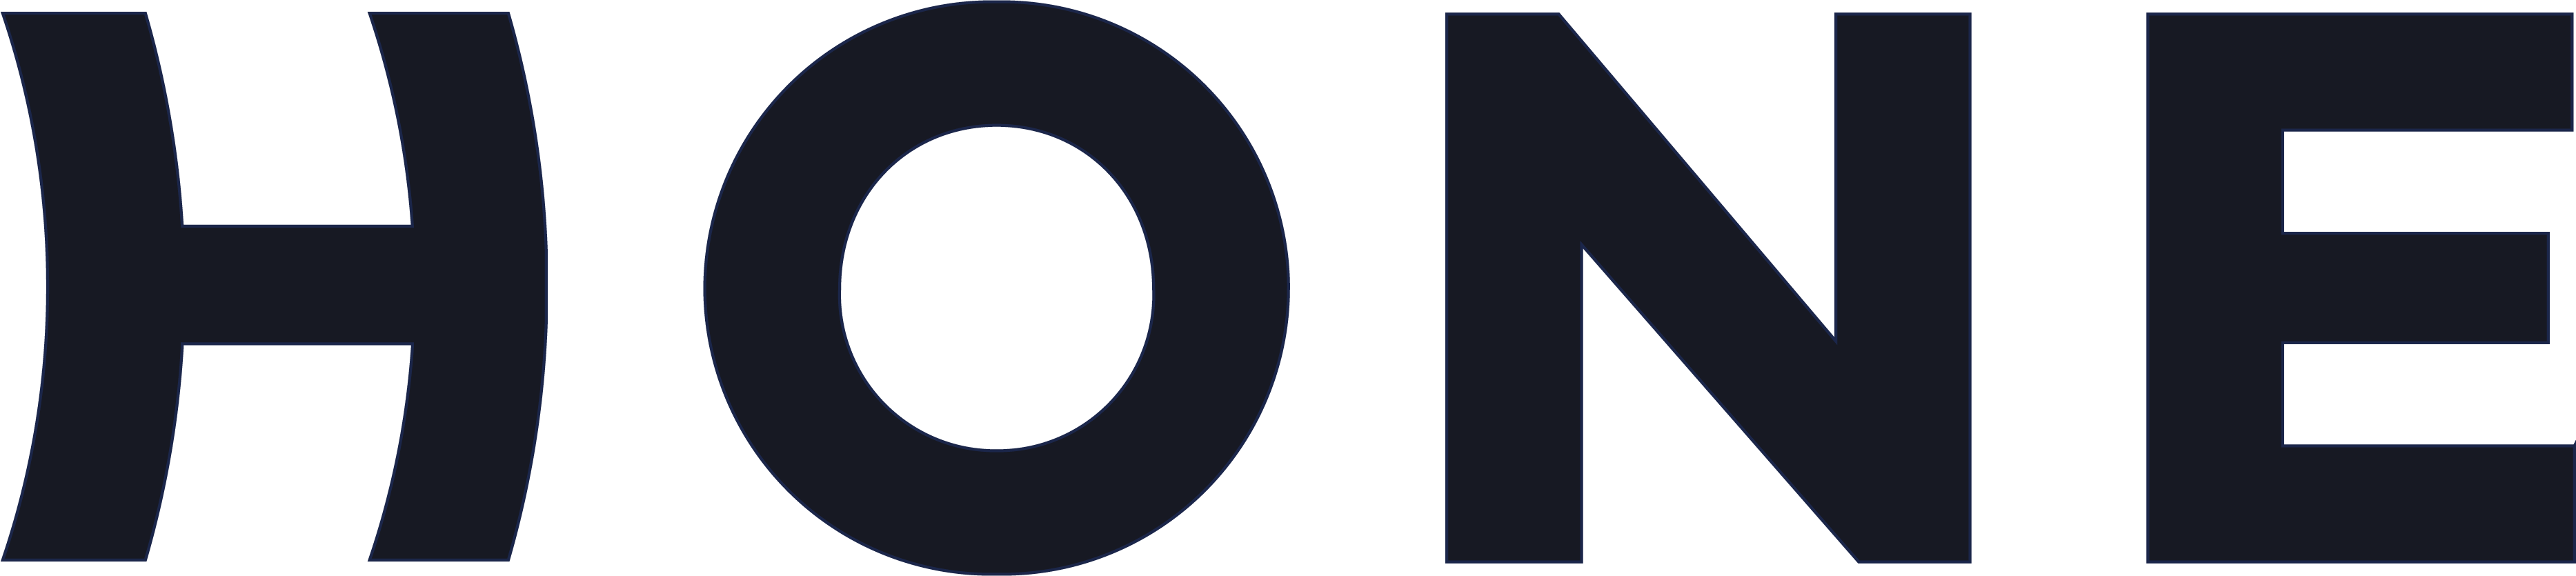 Hone logo